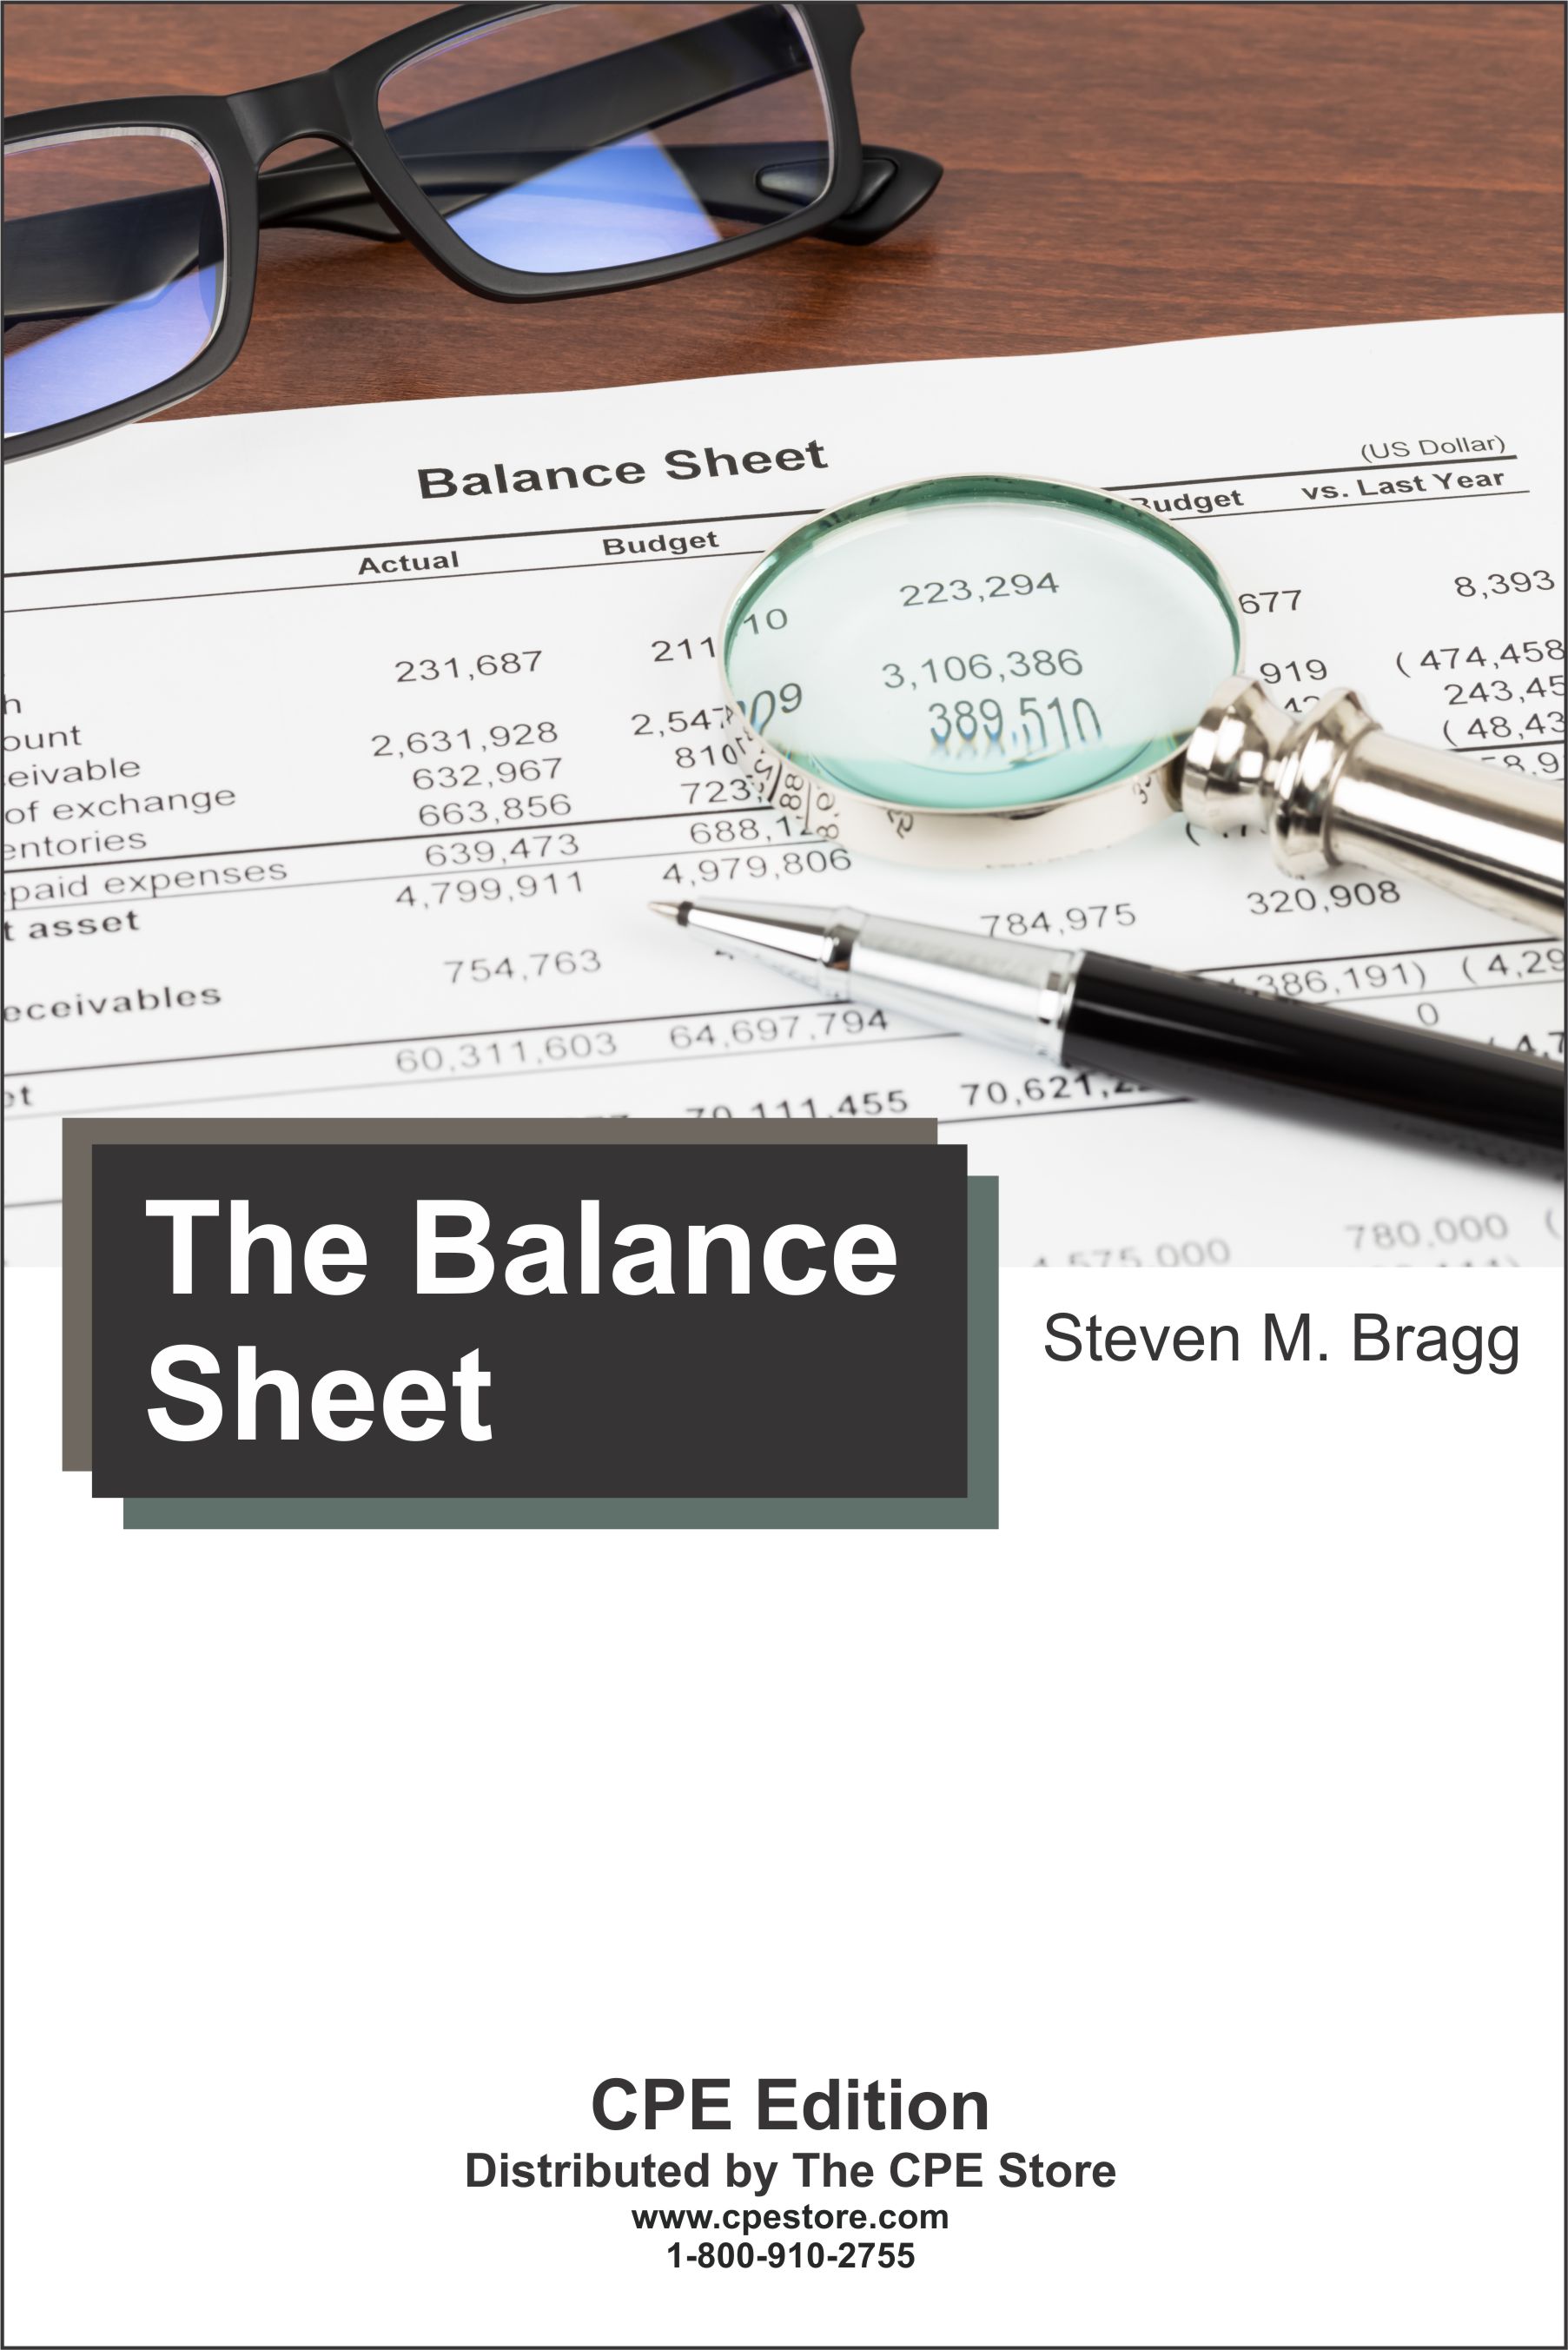 The Balance Sheet